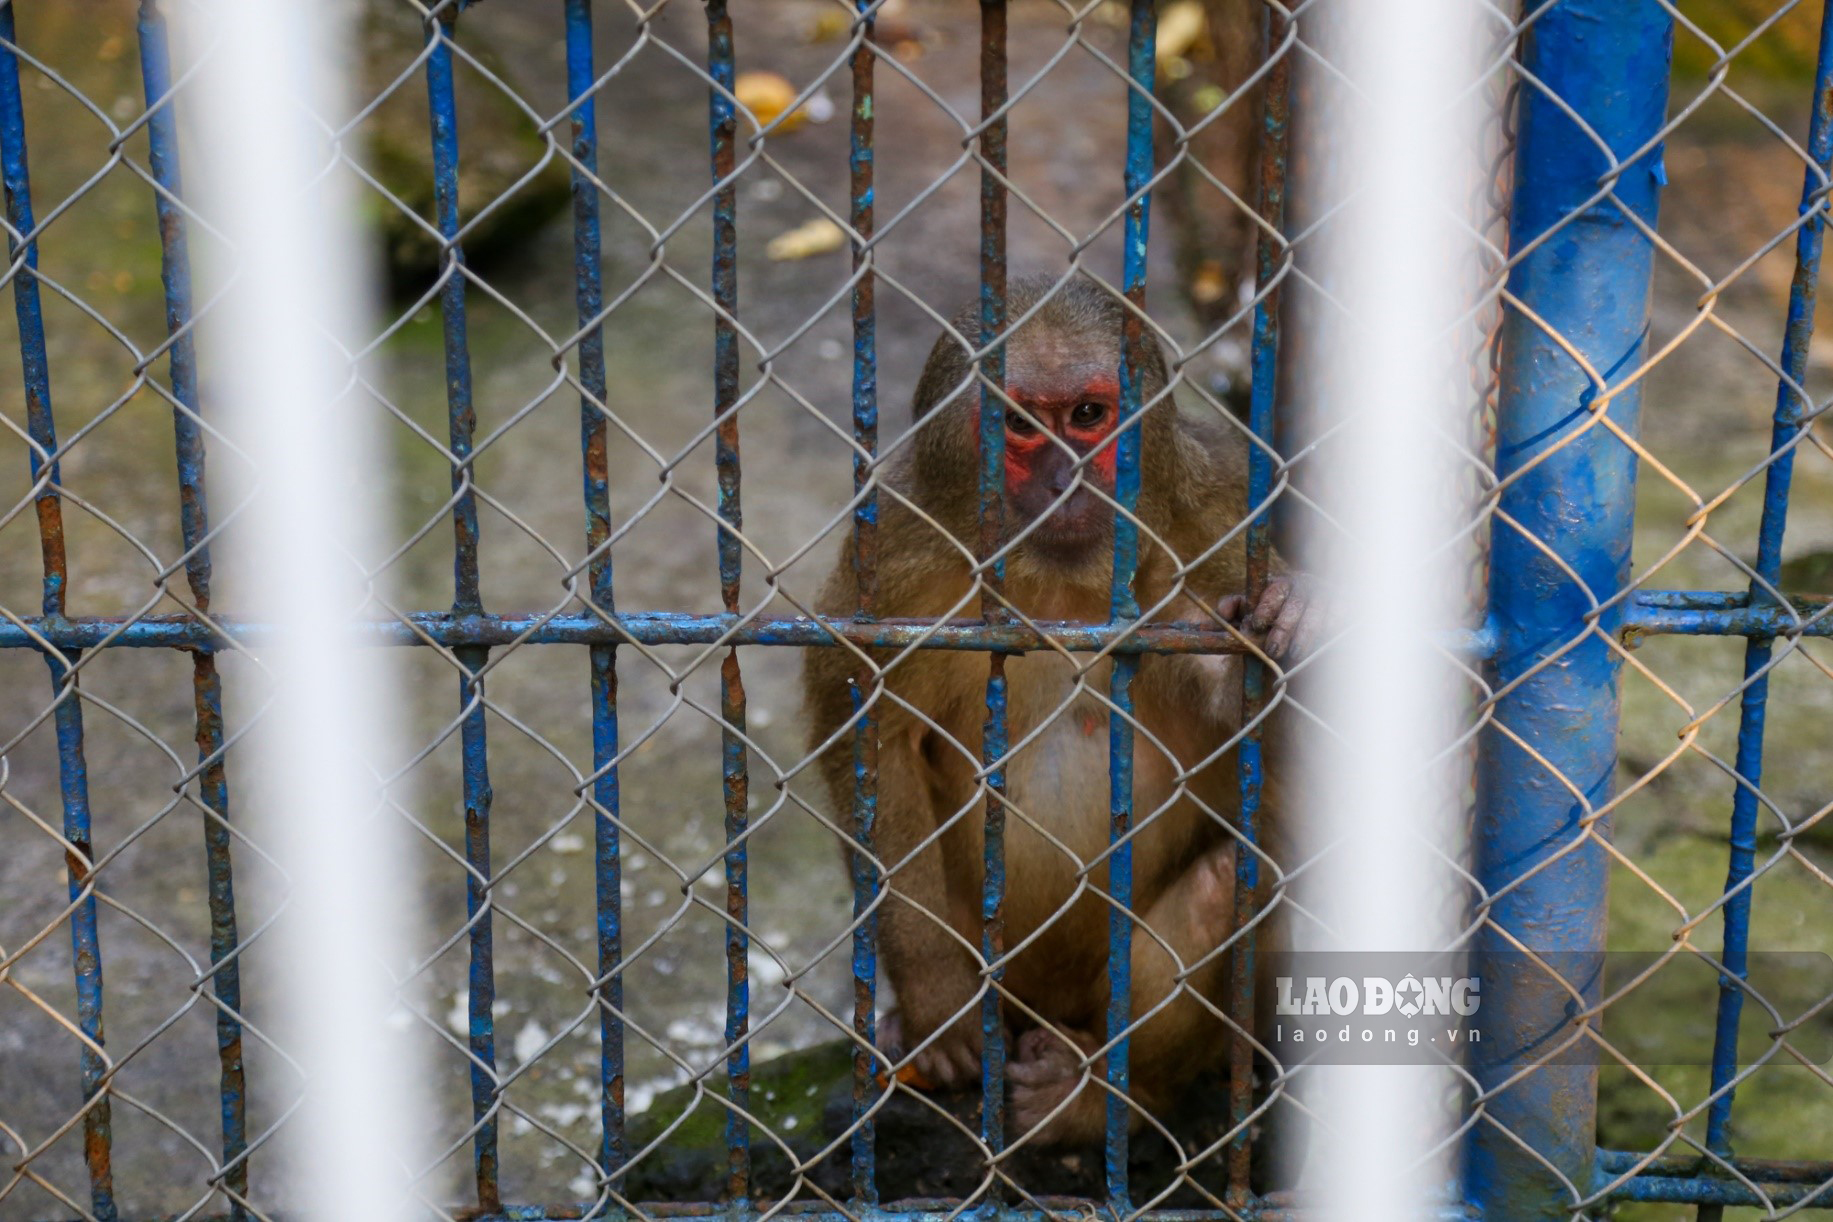 Một cá thể khỉ mốc ở trong khu vực chuồng nuôi đã xuống cấp, chật hẹp nên khó sinh trưởng và phát triển.